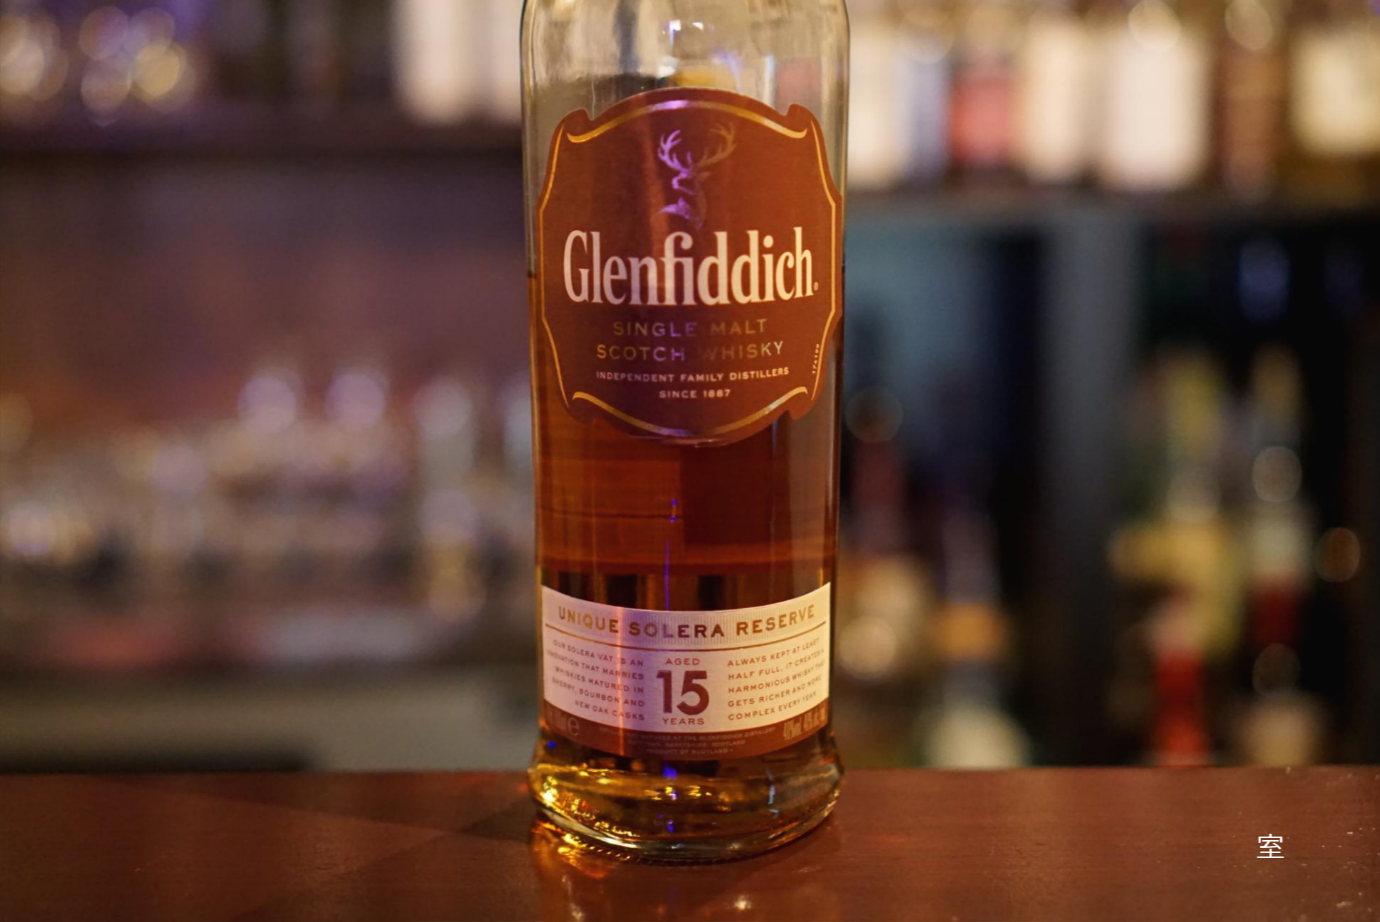 มารู้จัก Glenfiddich ใครที่อยากเริ่มดื่ม Single Malt ต้องลอง! 1